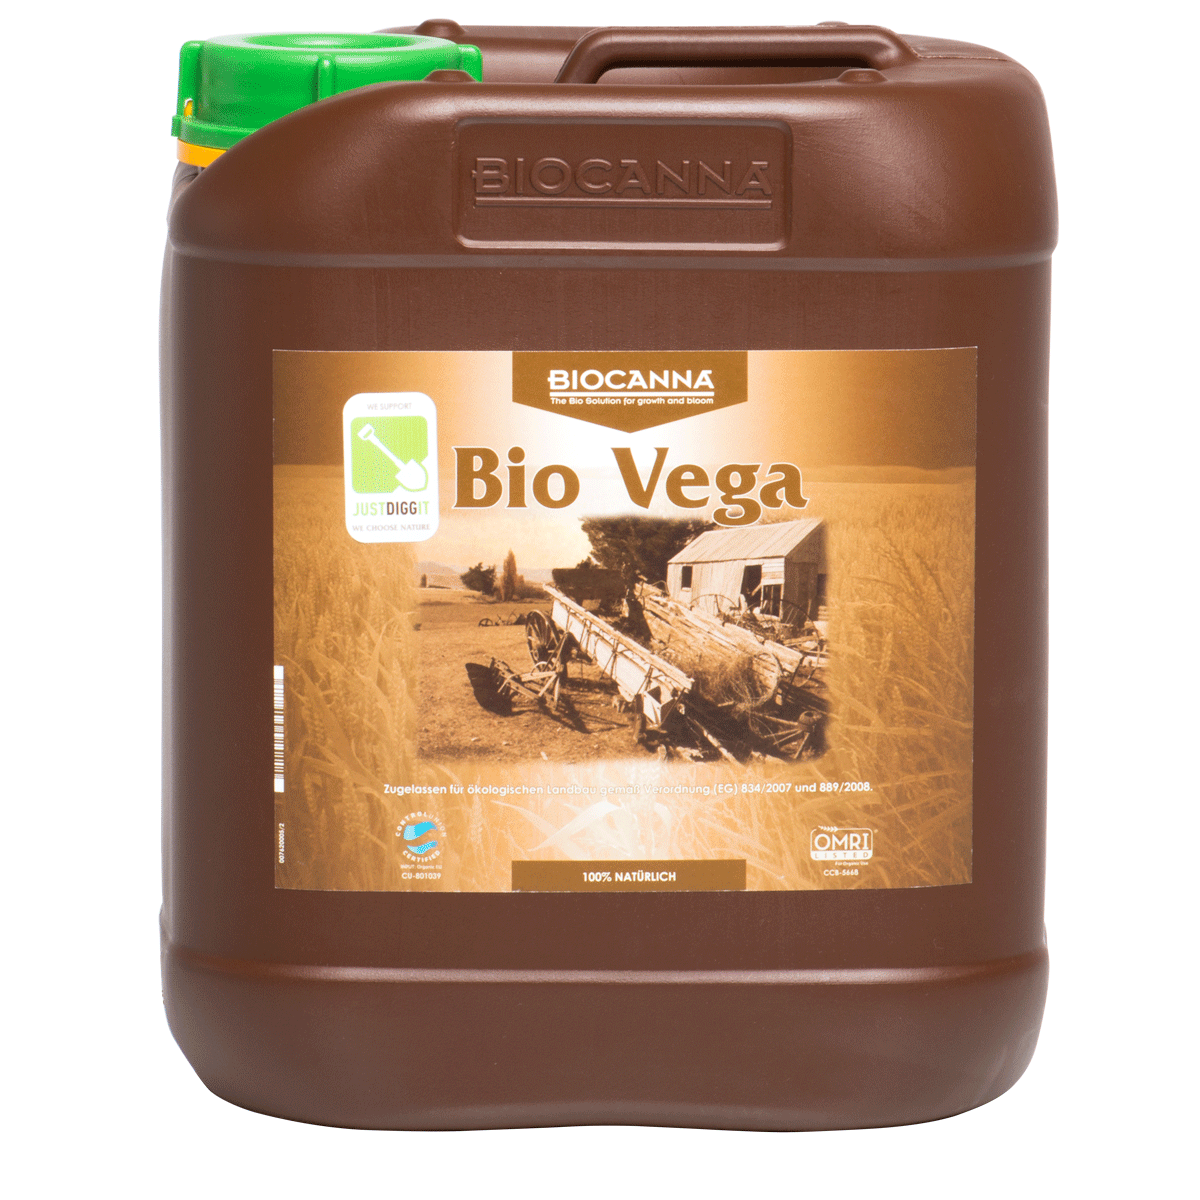 Canna Bio Vega, 5 l